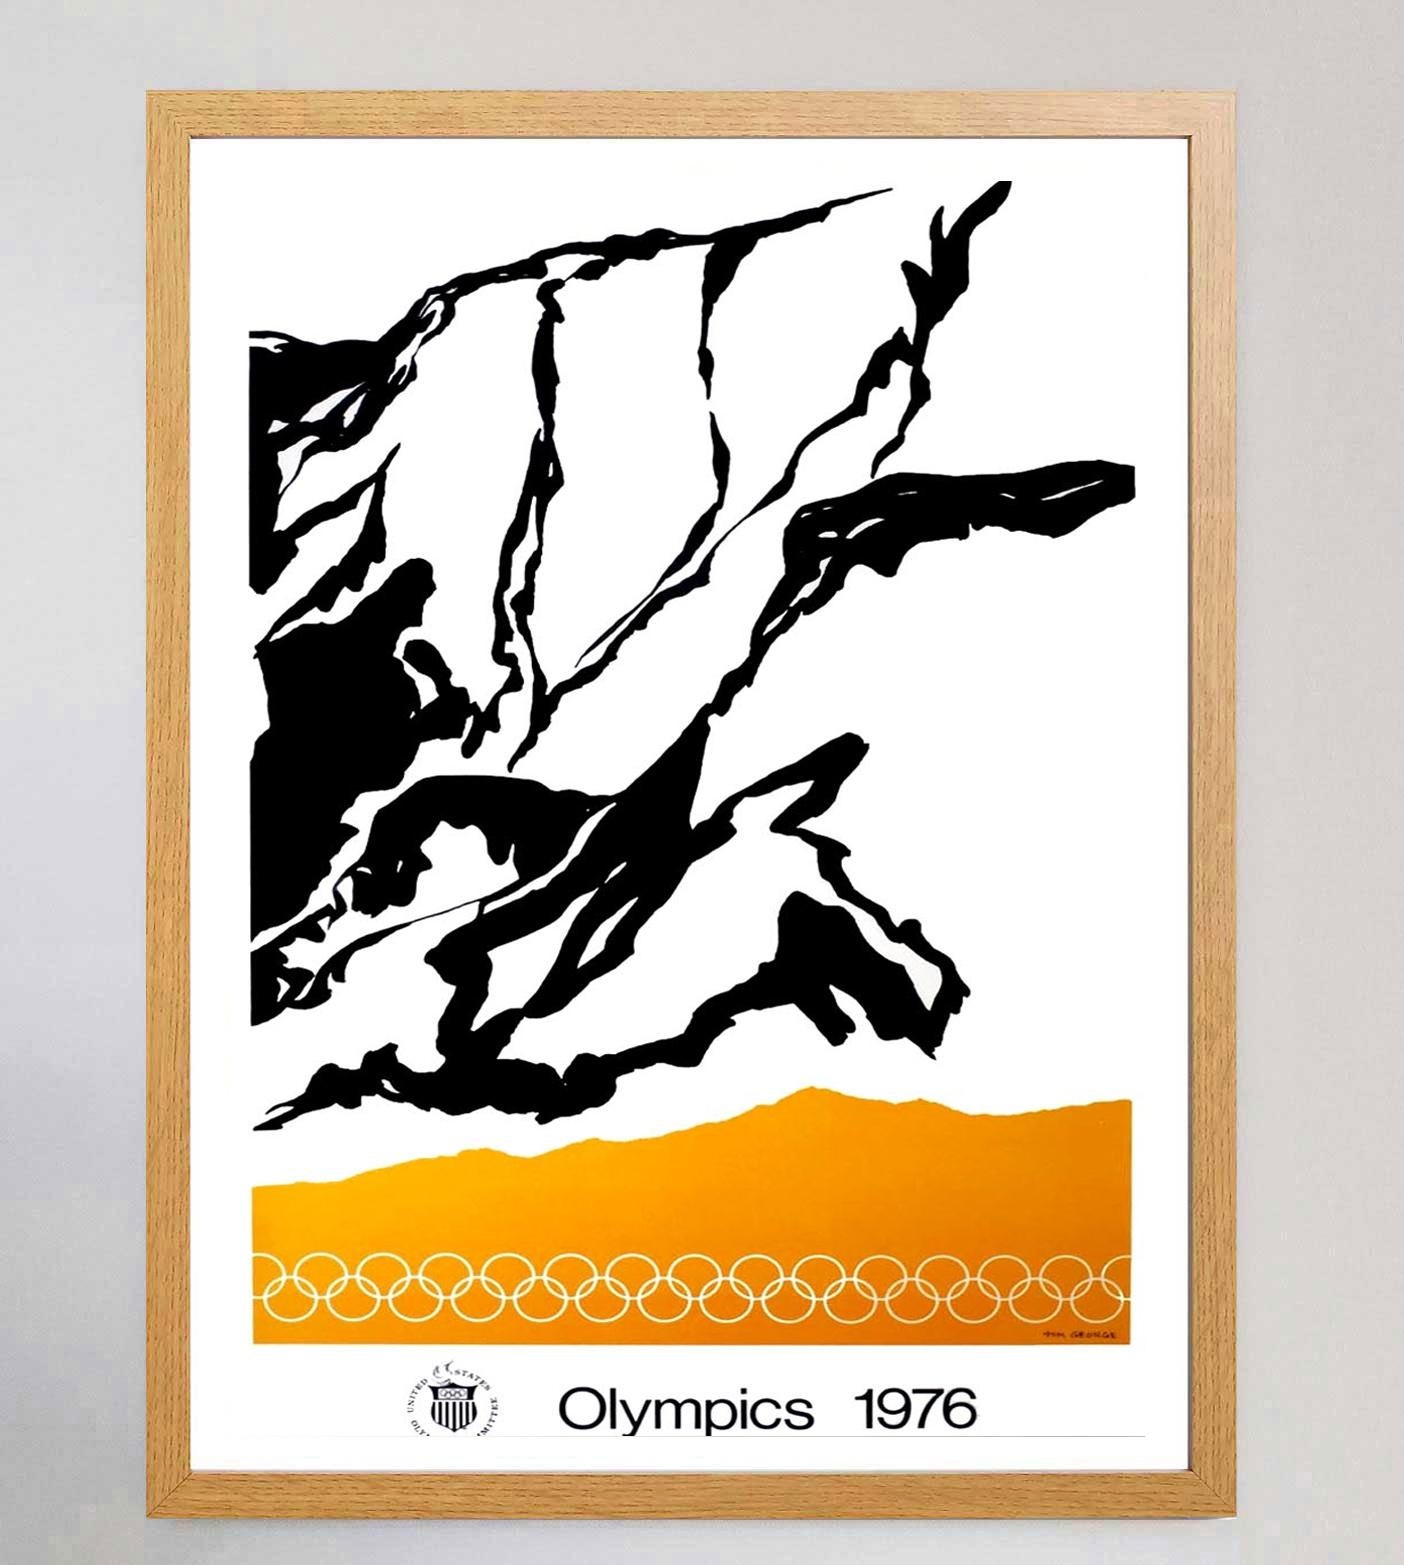 L'artiste américain Tom George a été l'un des nombreux artistes chargés de créer des affiches d'art pour la promotion des Jeux olympiques d'été de 1976 à Montréal. Ces jeux, les premiers et les seuls jeux d'été organisés au Canada, ont été remportés